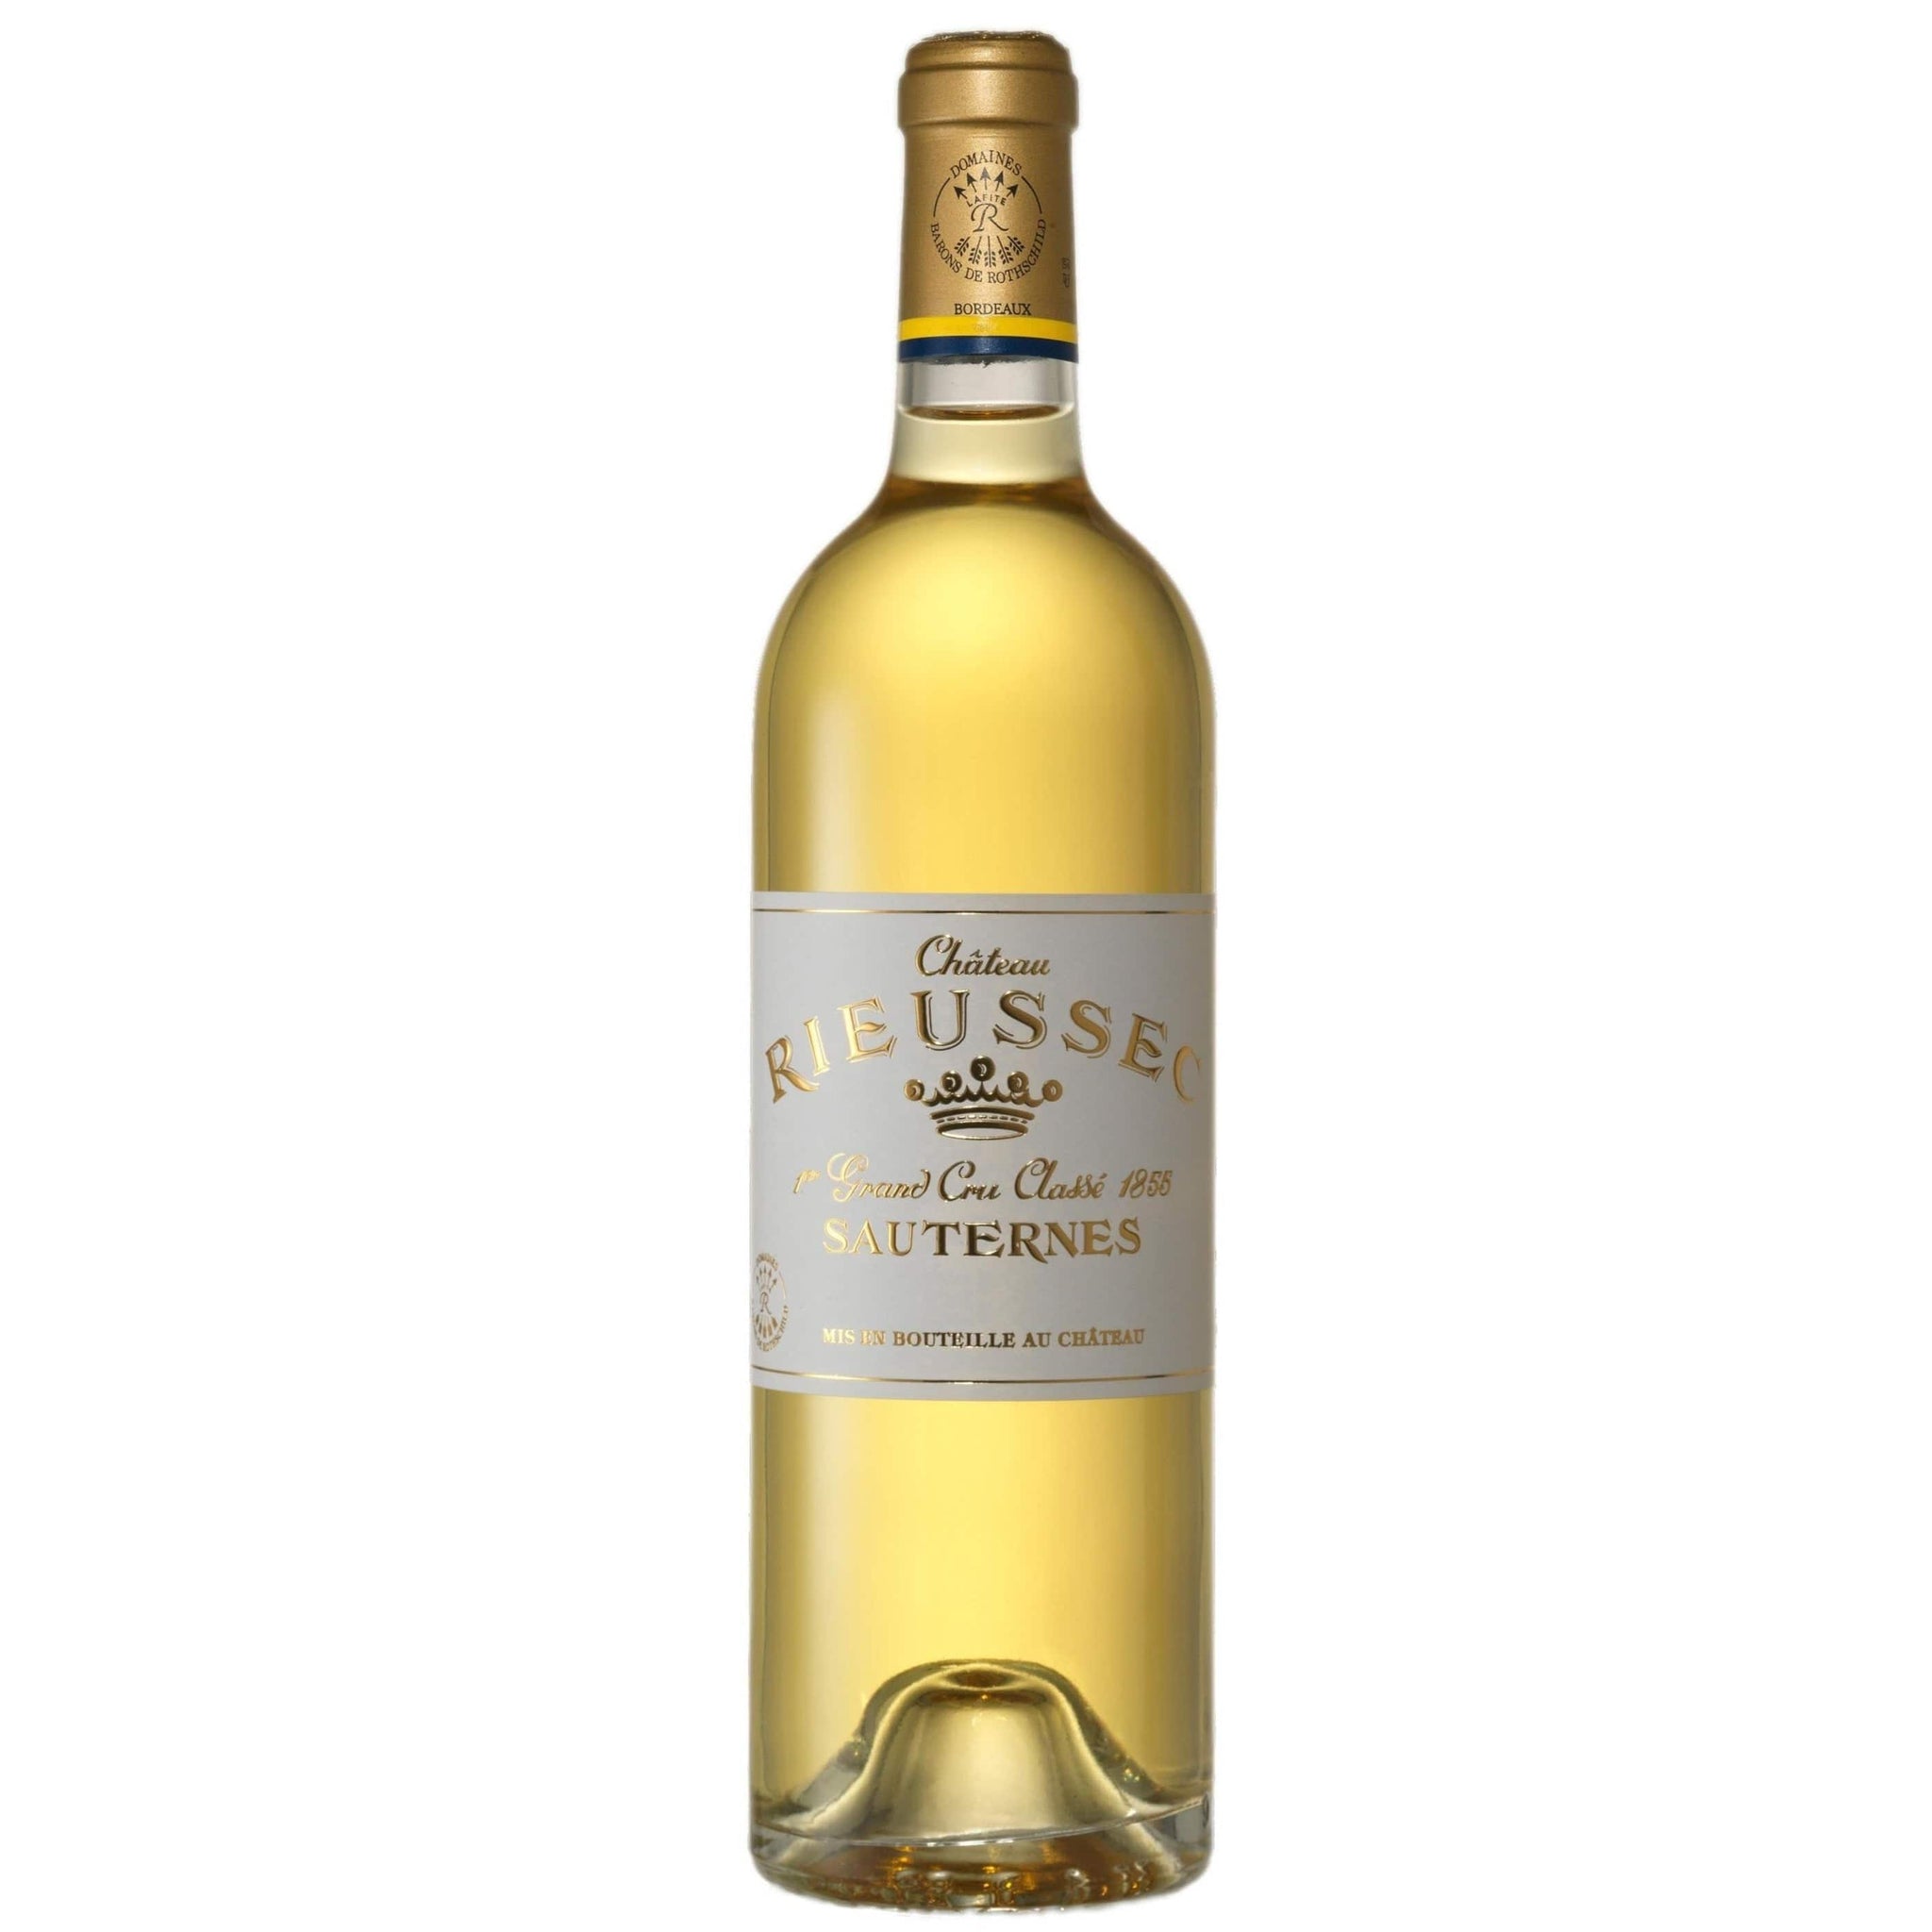 Single bottle of Sweet white wine Ch. Rieussec, 1st Growth Premier Cru Classe, Sauternes, 2011 Semillon & Sauvignon Blanc